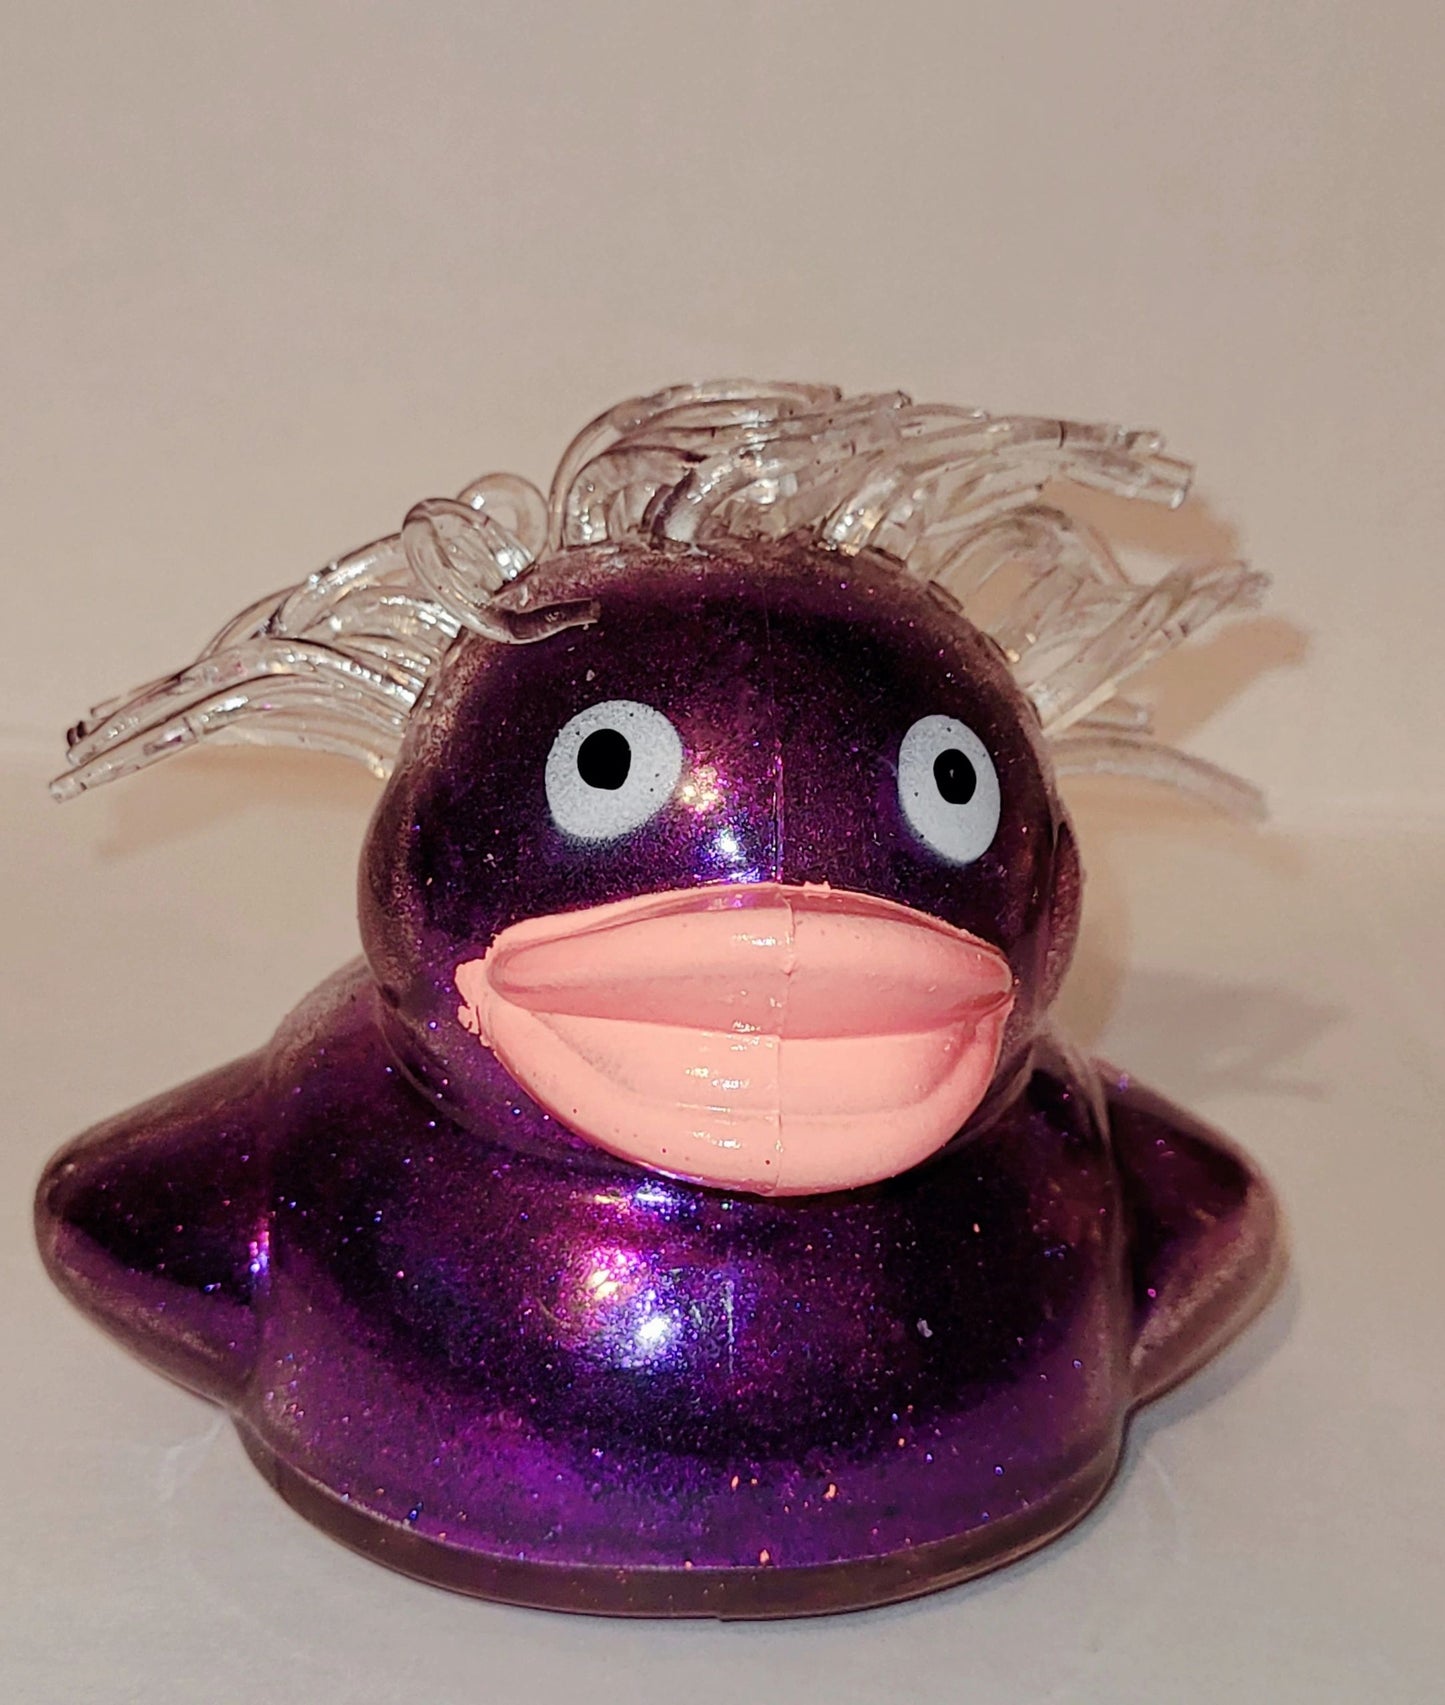 4 “ Ducky Glitter Puffer balls